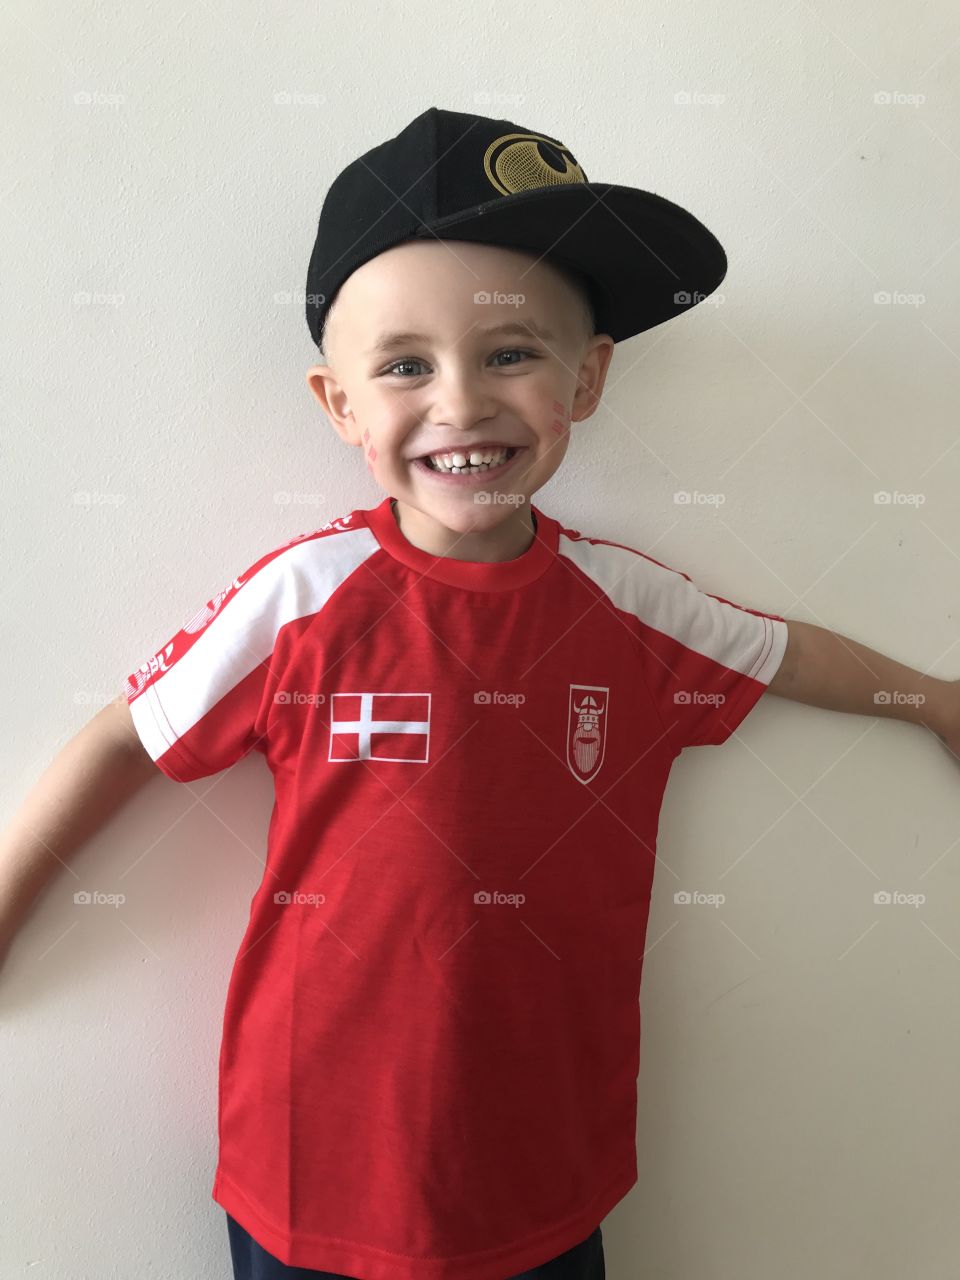 Danish football, VM, Danish boy smiling